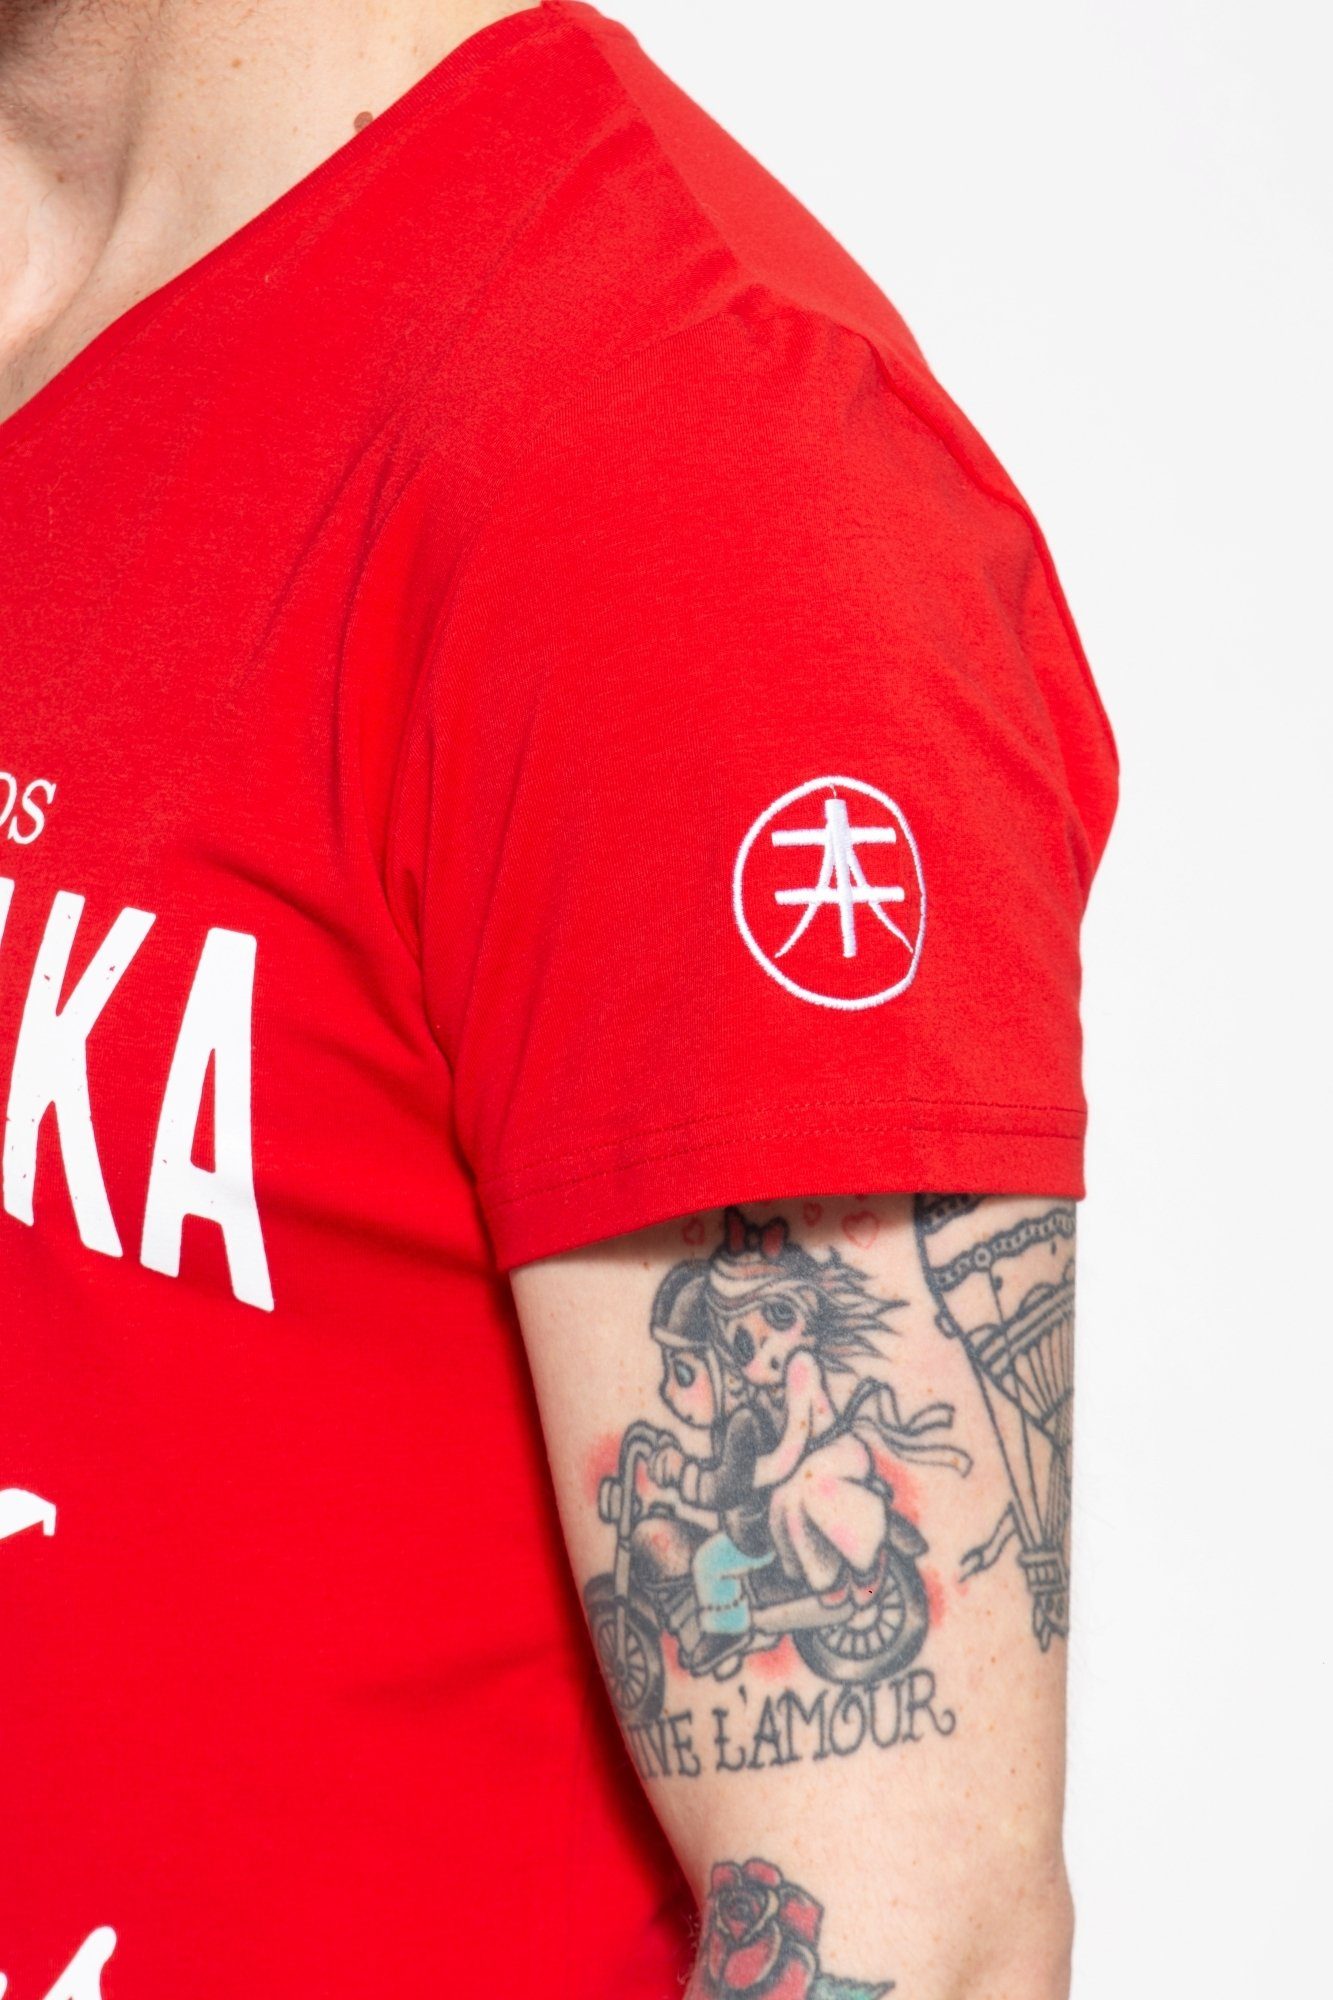 Akito Tanaka T-Shirt rot Kontrast-Print mit Fighters coolem Gladiator